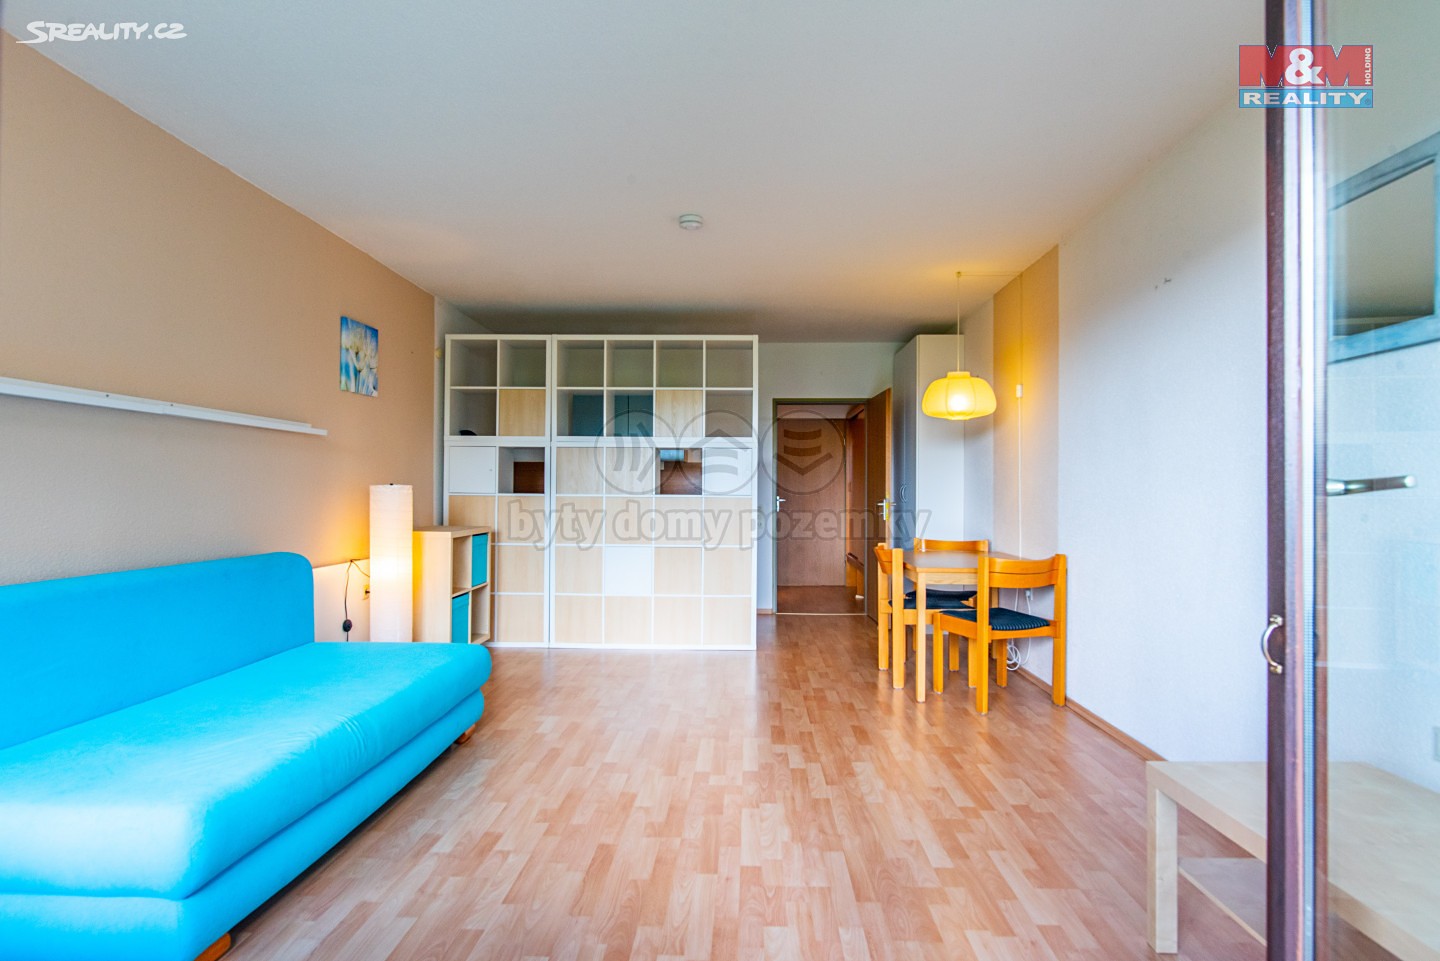 Prodej bytu 1+kk 39 m², Strážný, okres Prachatice